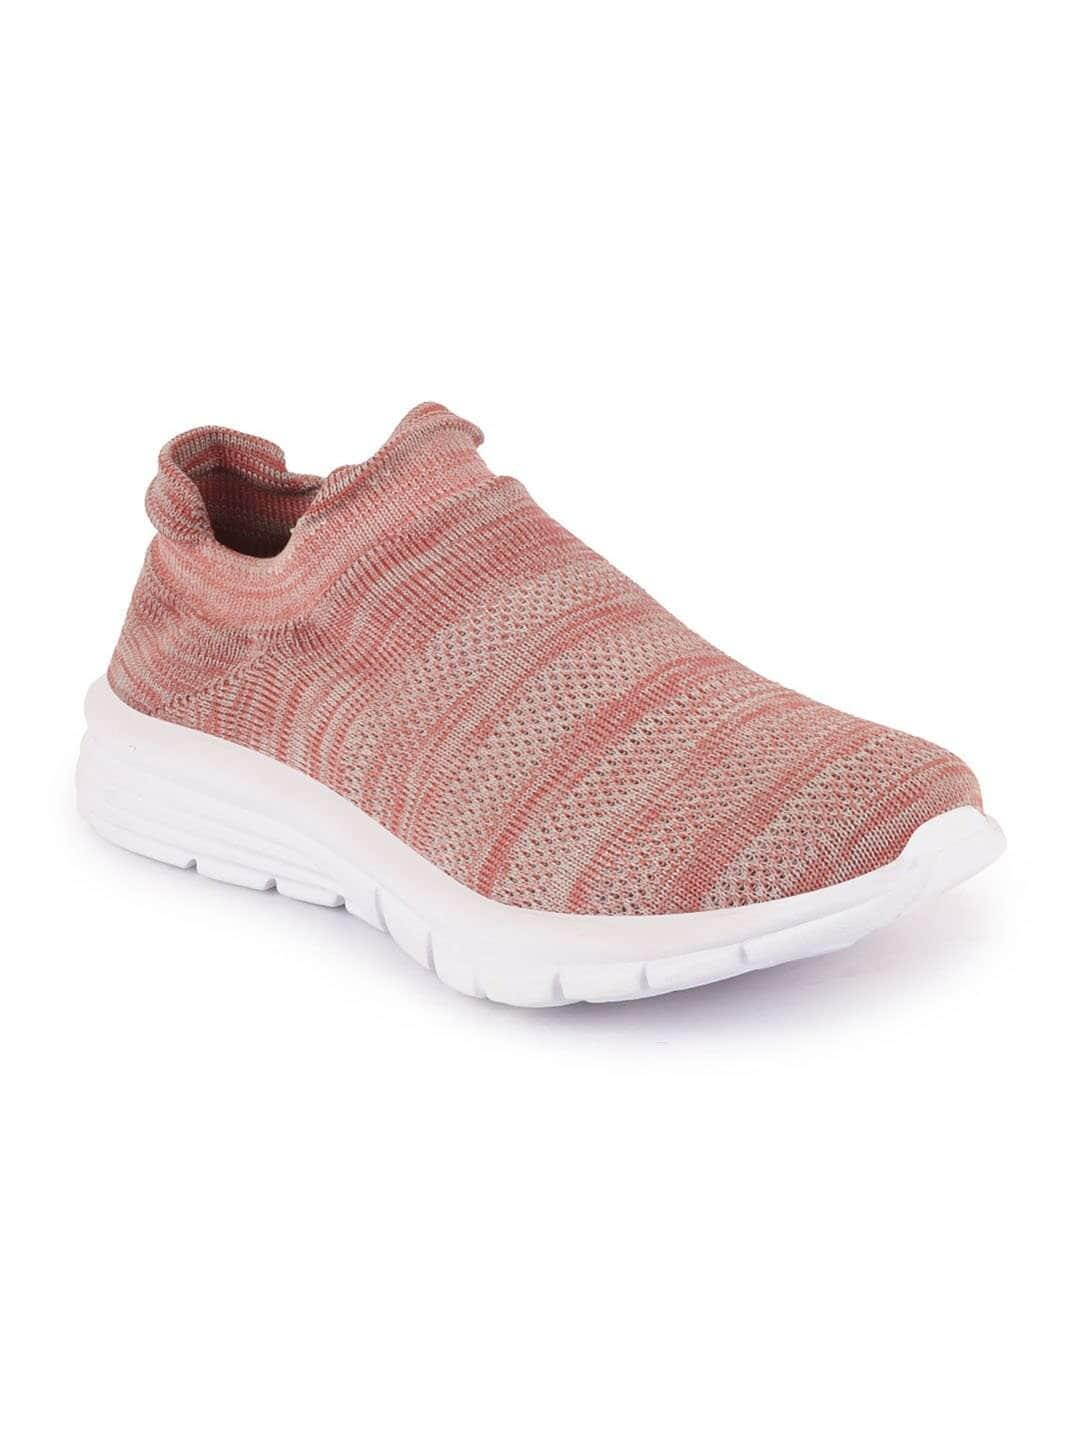 fausto-women-pink-mesh-walking-non-marking-sports-shoes